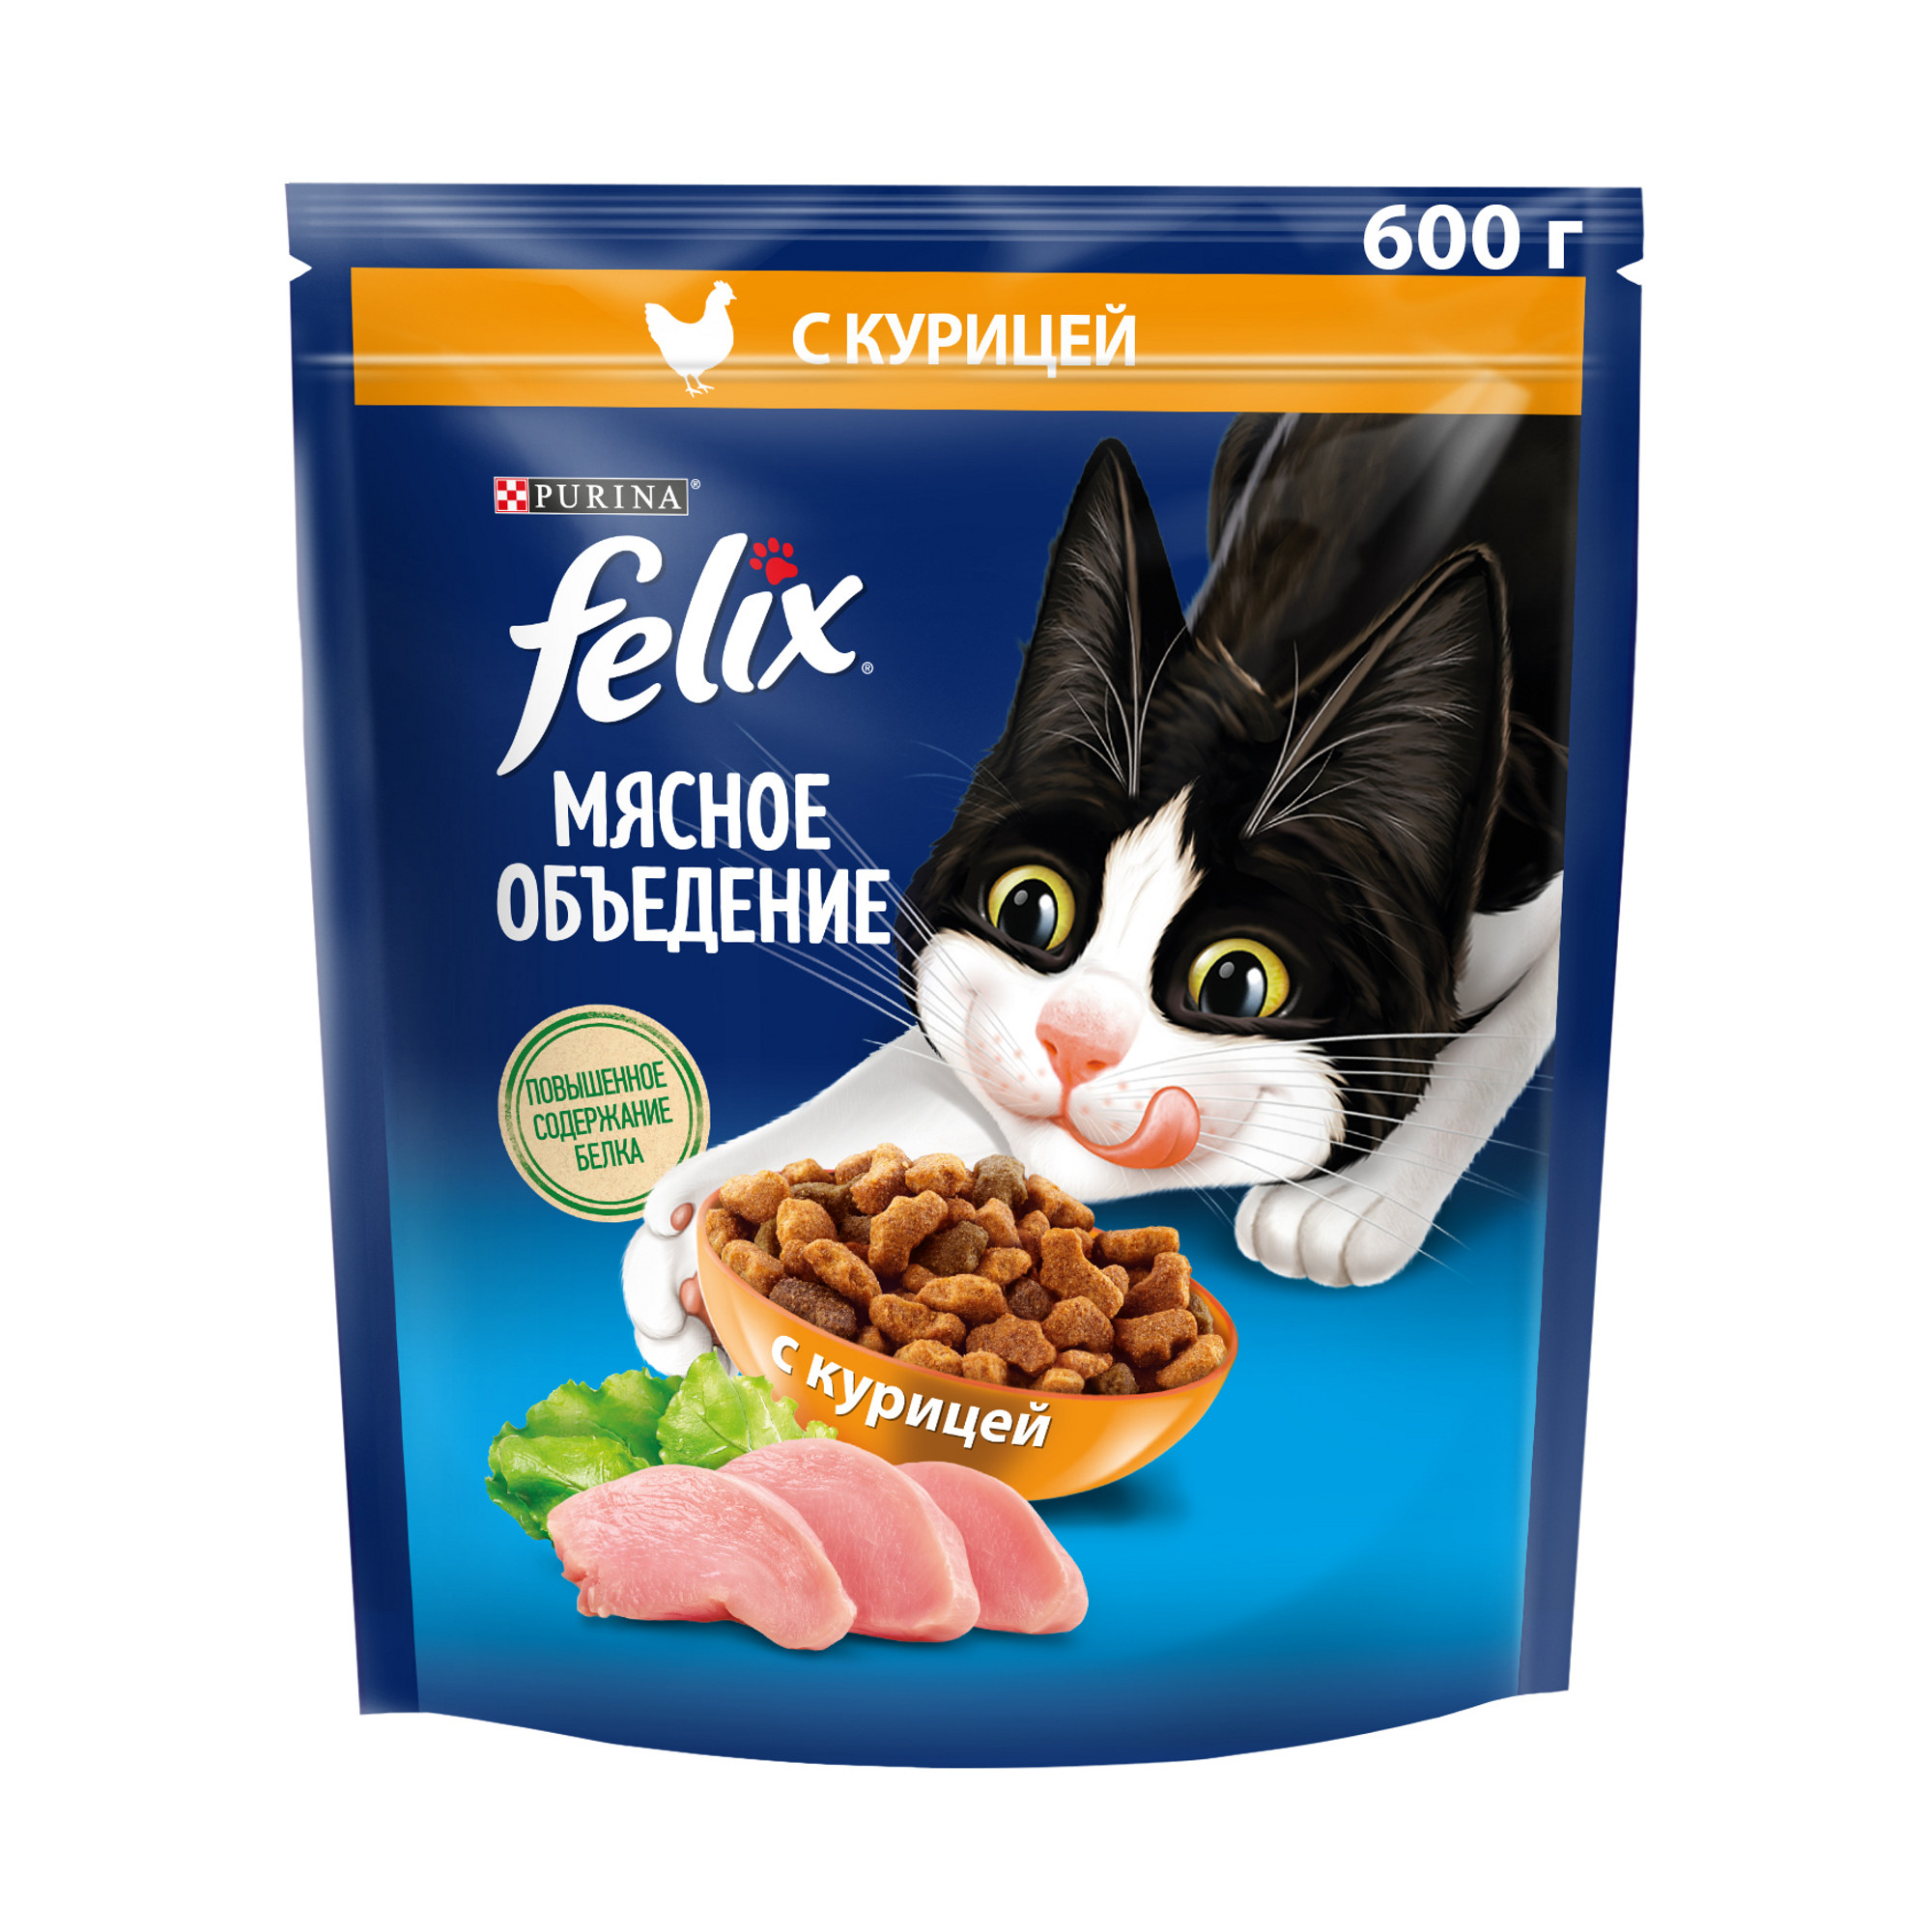 Сухой корм для кошек Felix Мясное объедение с курицей, 600 г